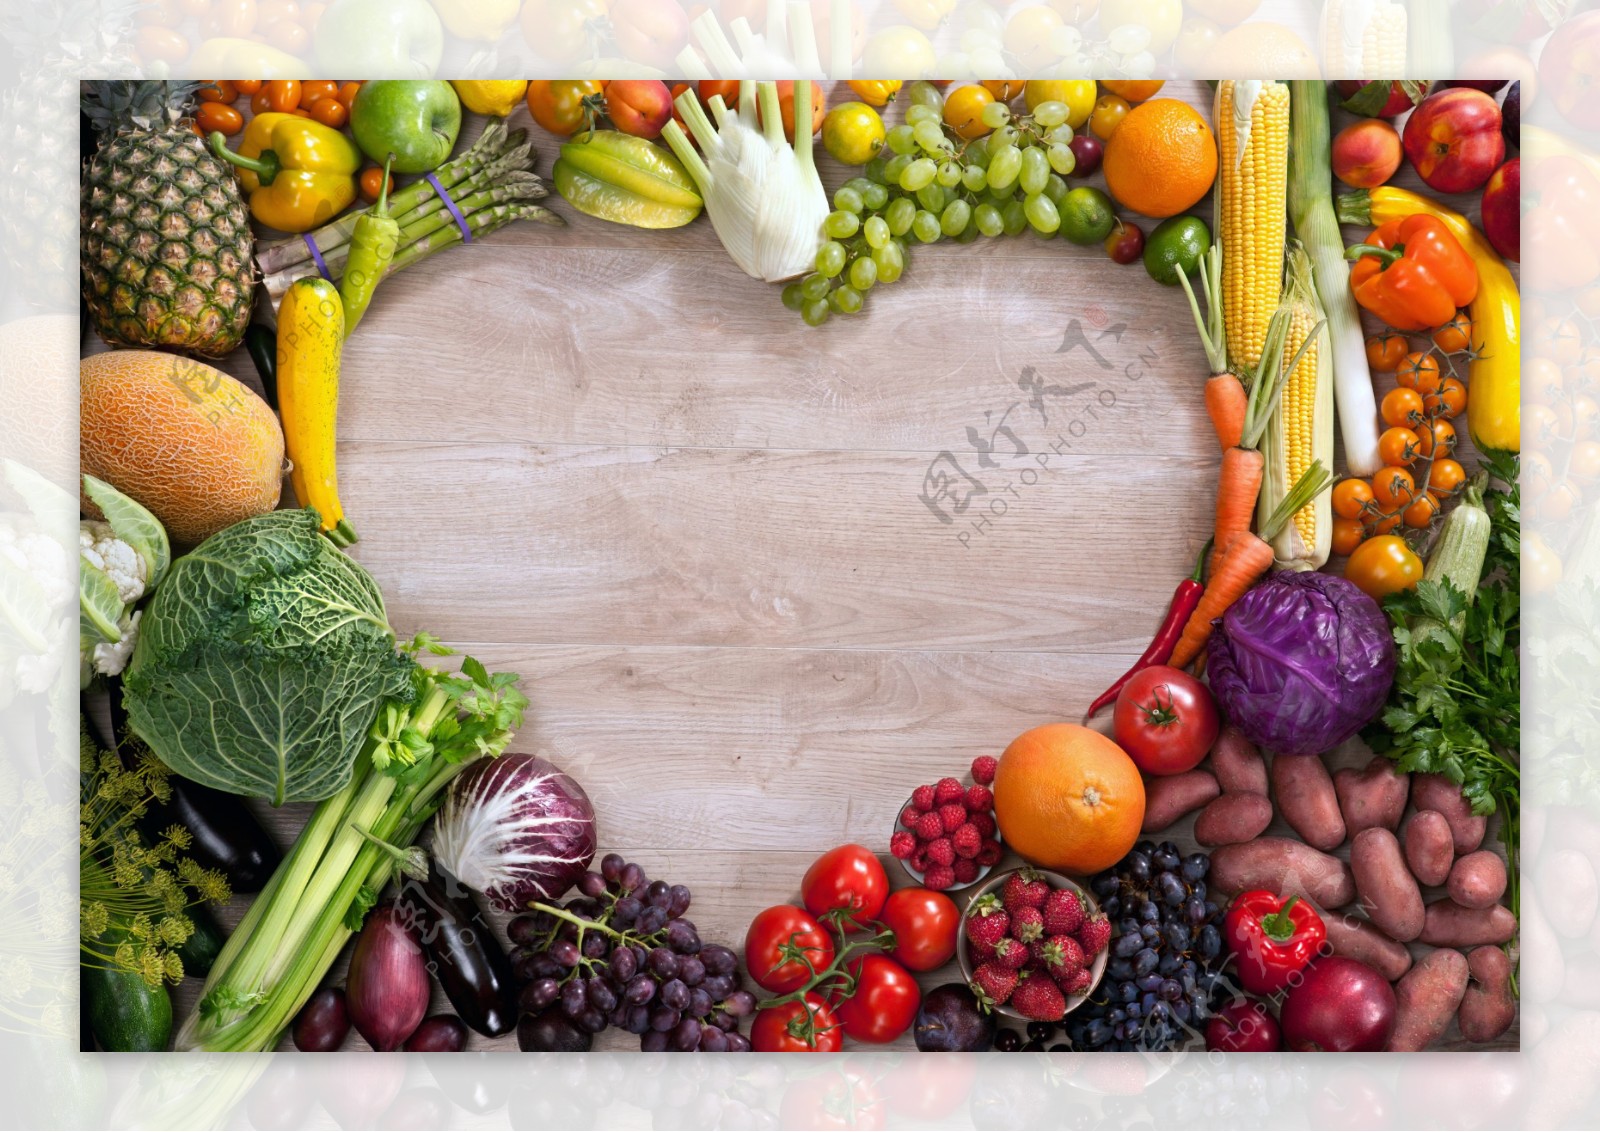 蔬菜水果组合心形高清背景